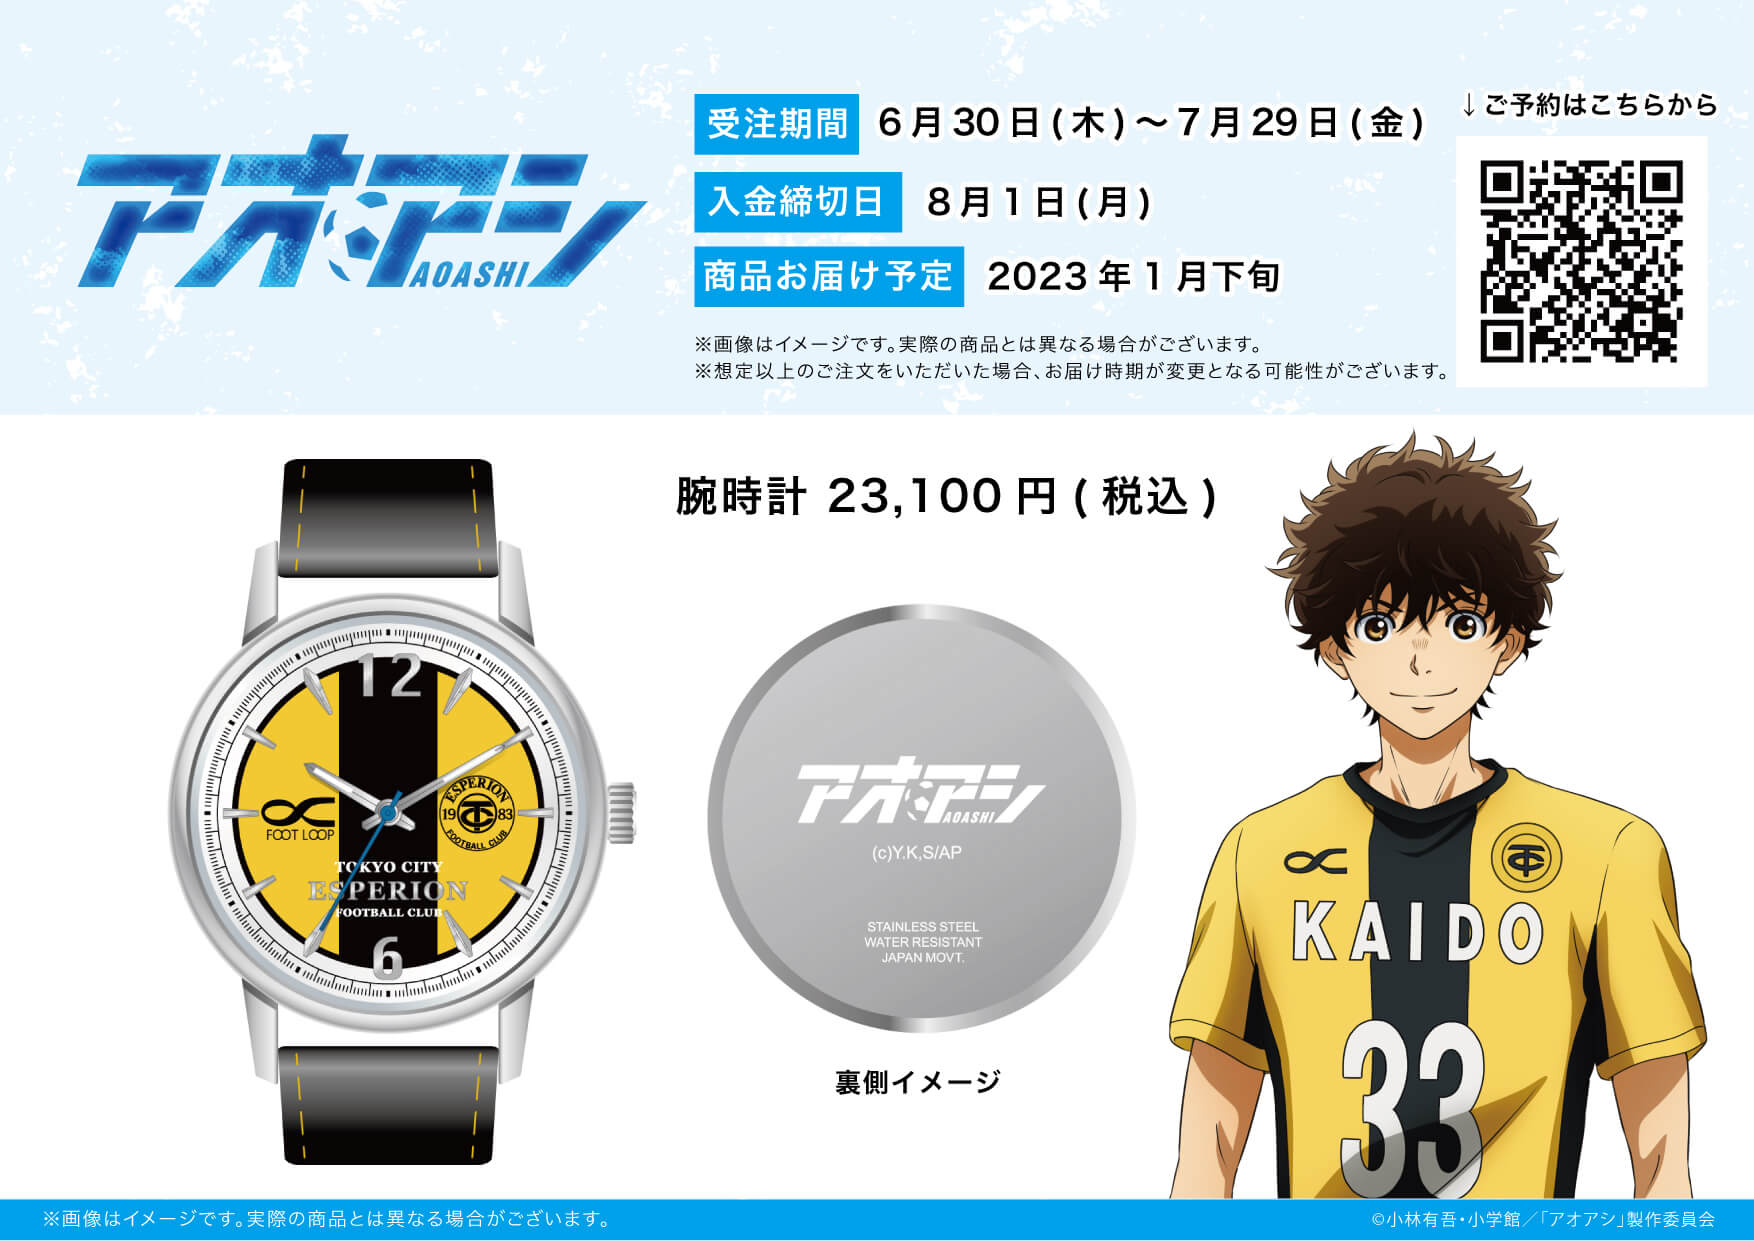 アニメ アオアシ の腕時計が発売開始 新作グッズは東京シティ エスペリオンユースのユニフォームをイメージしたデザインに Eeo Today